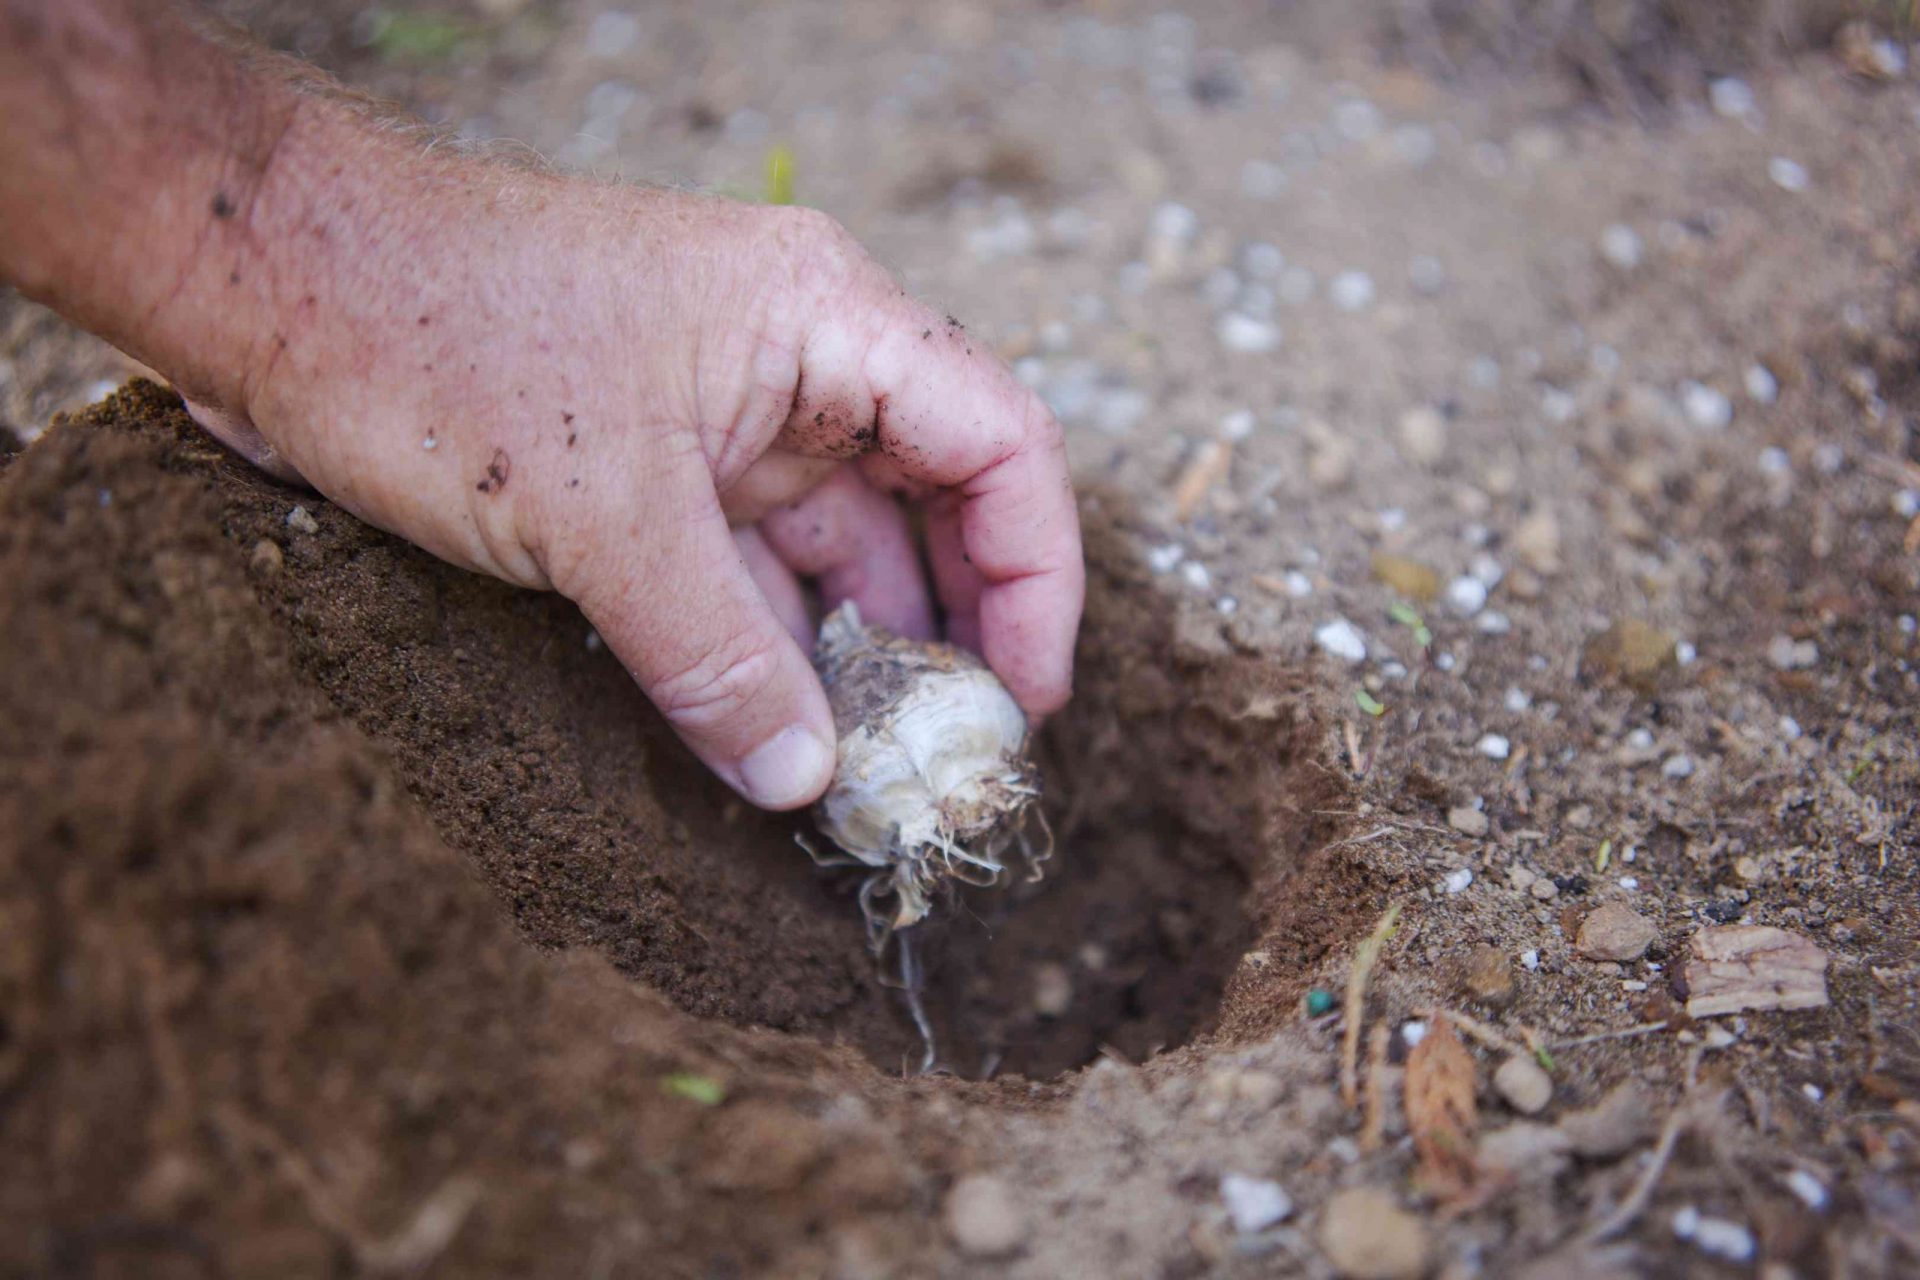 la mano coloca el bulbo blanco en un agujero recién cavado en la tierra del jardín